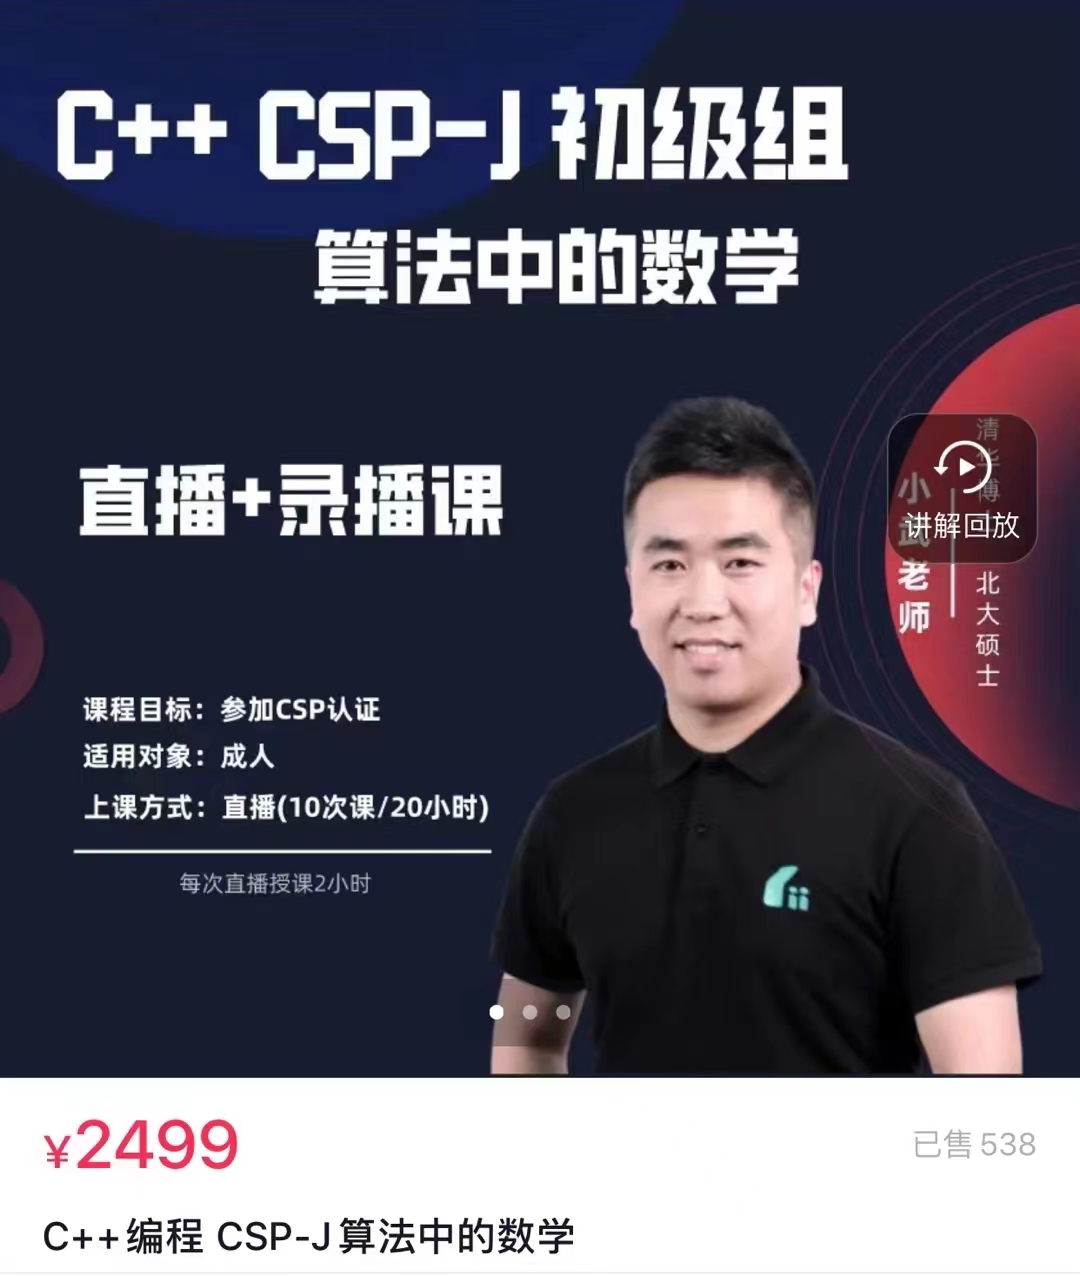 199?【小武老师】C++编程 CSP-J 算法中的数学